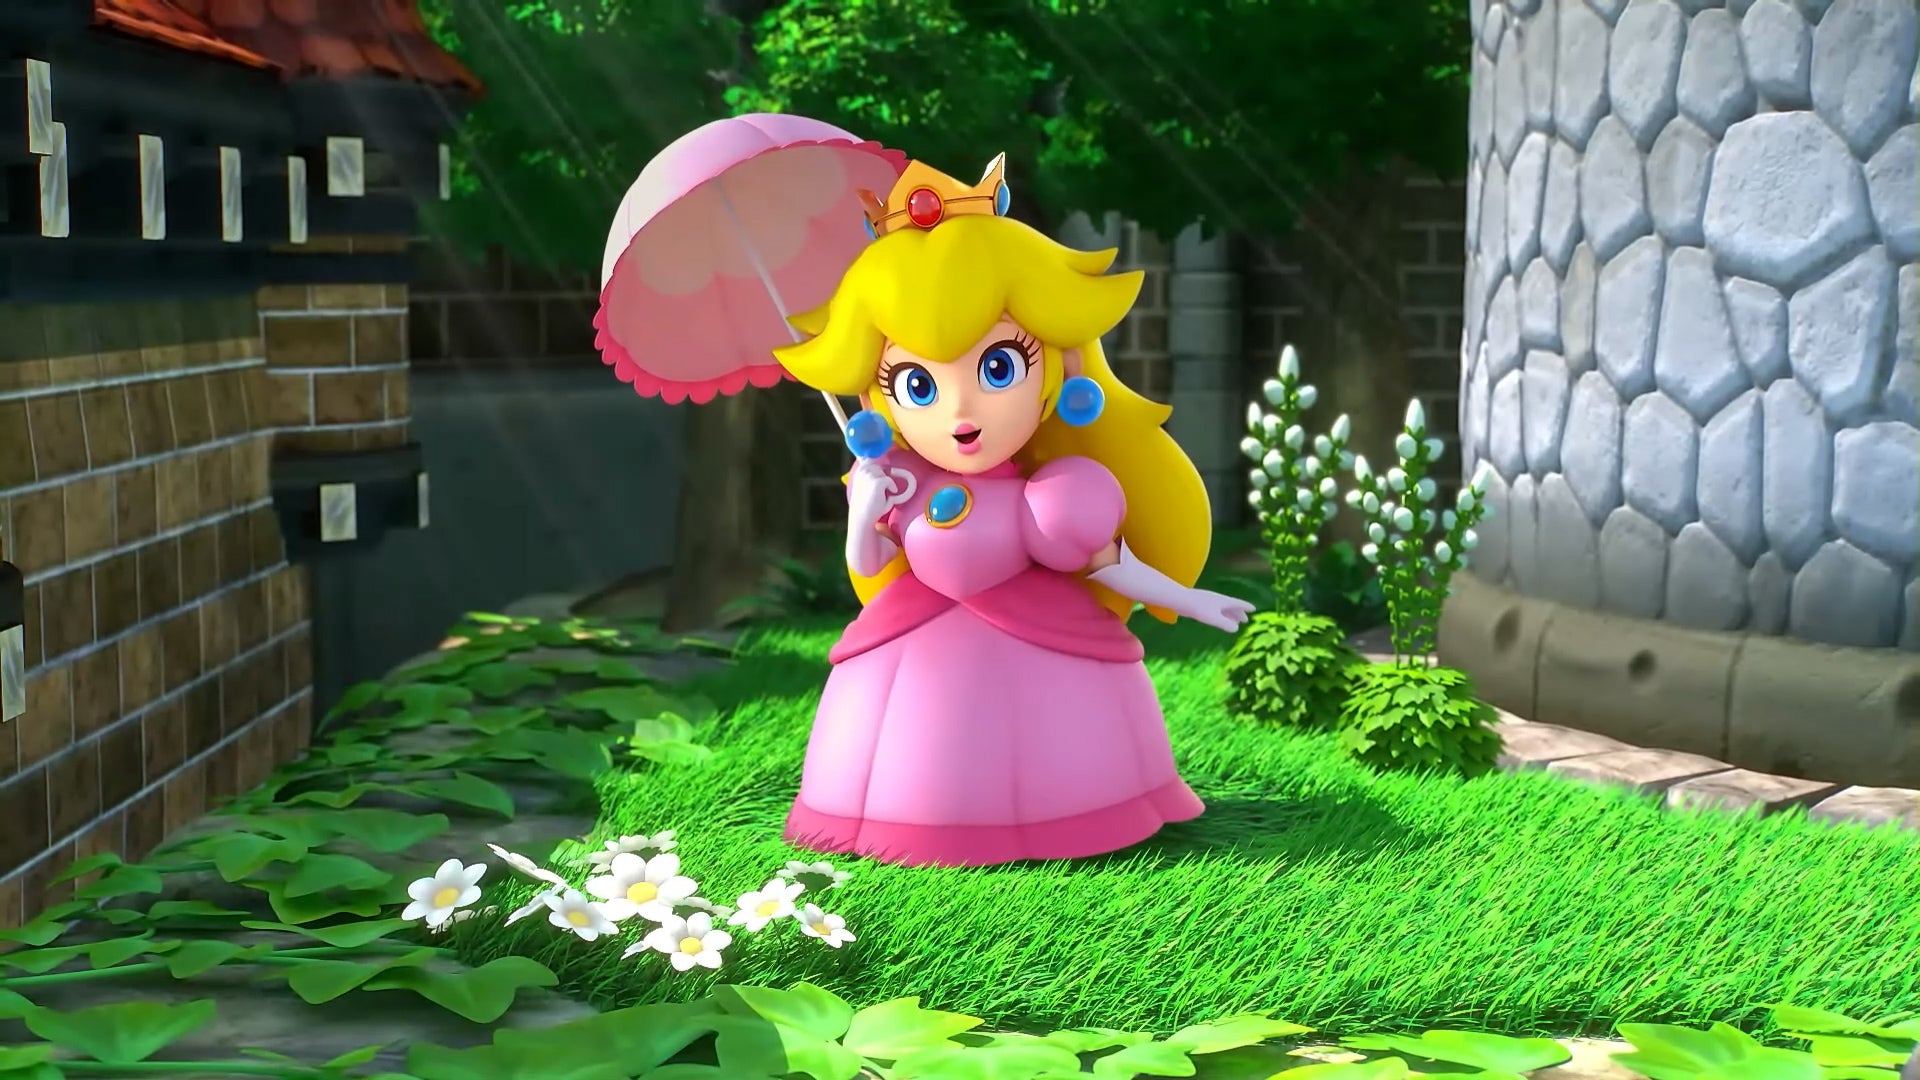 Nintendo опублікувала кілька скріншотів з Super Mario RPG Remake з локаціями, боями та іншим